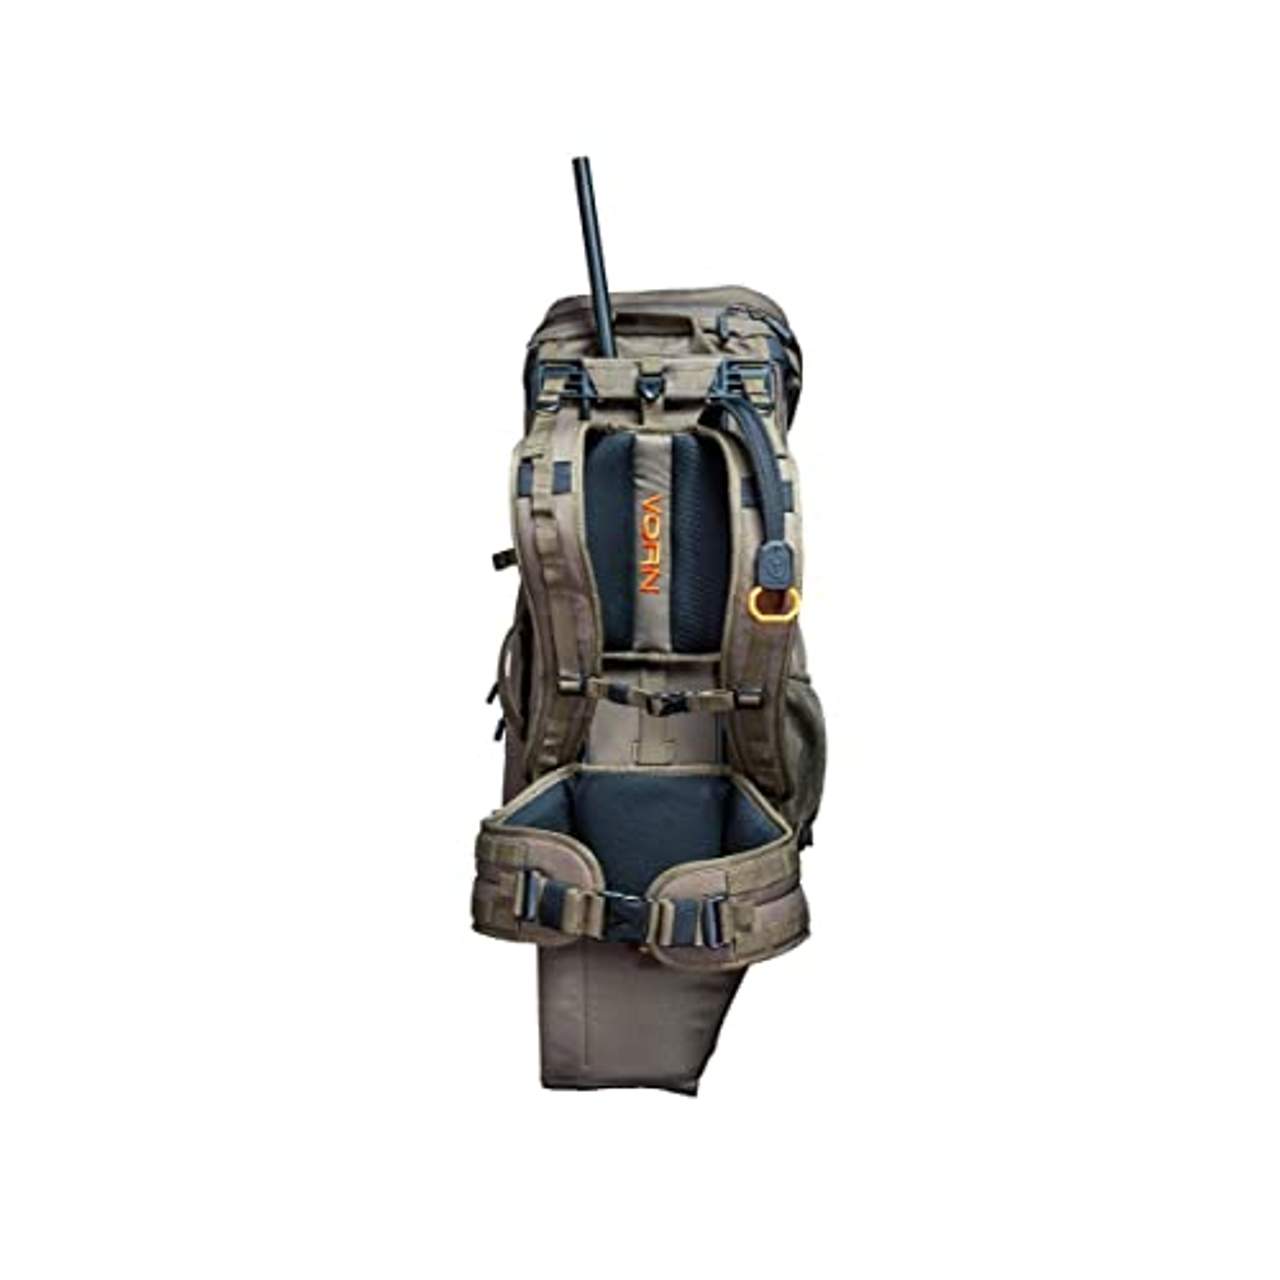 VORN EV45 Hunting backpack